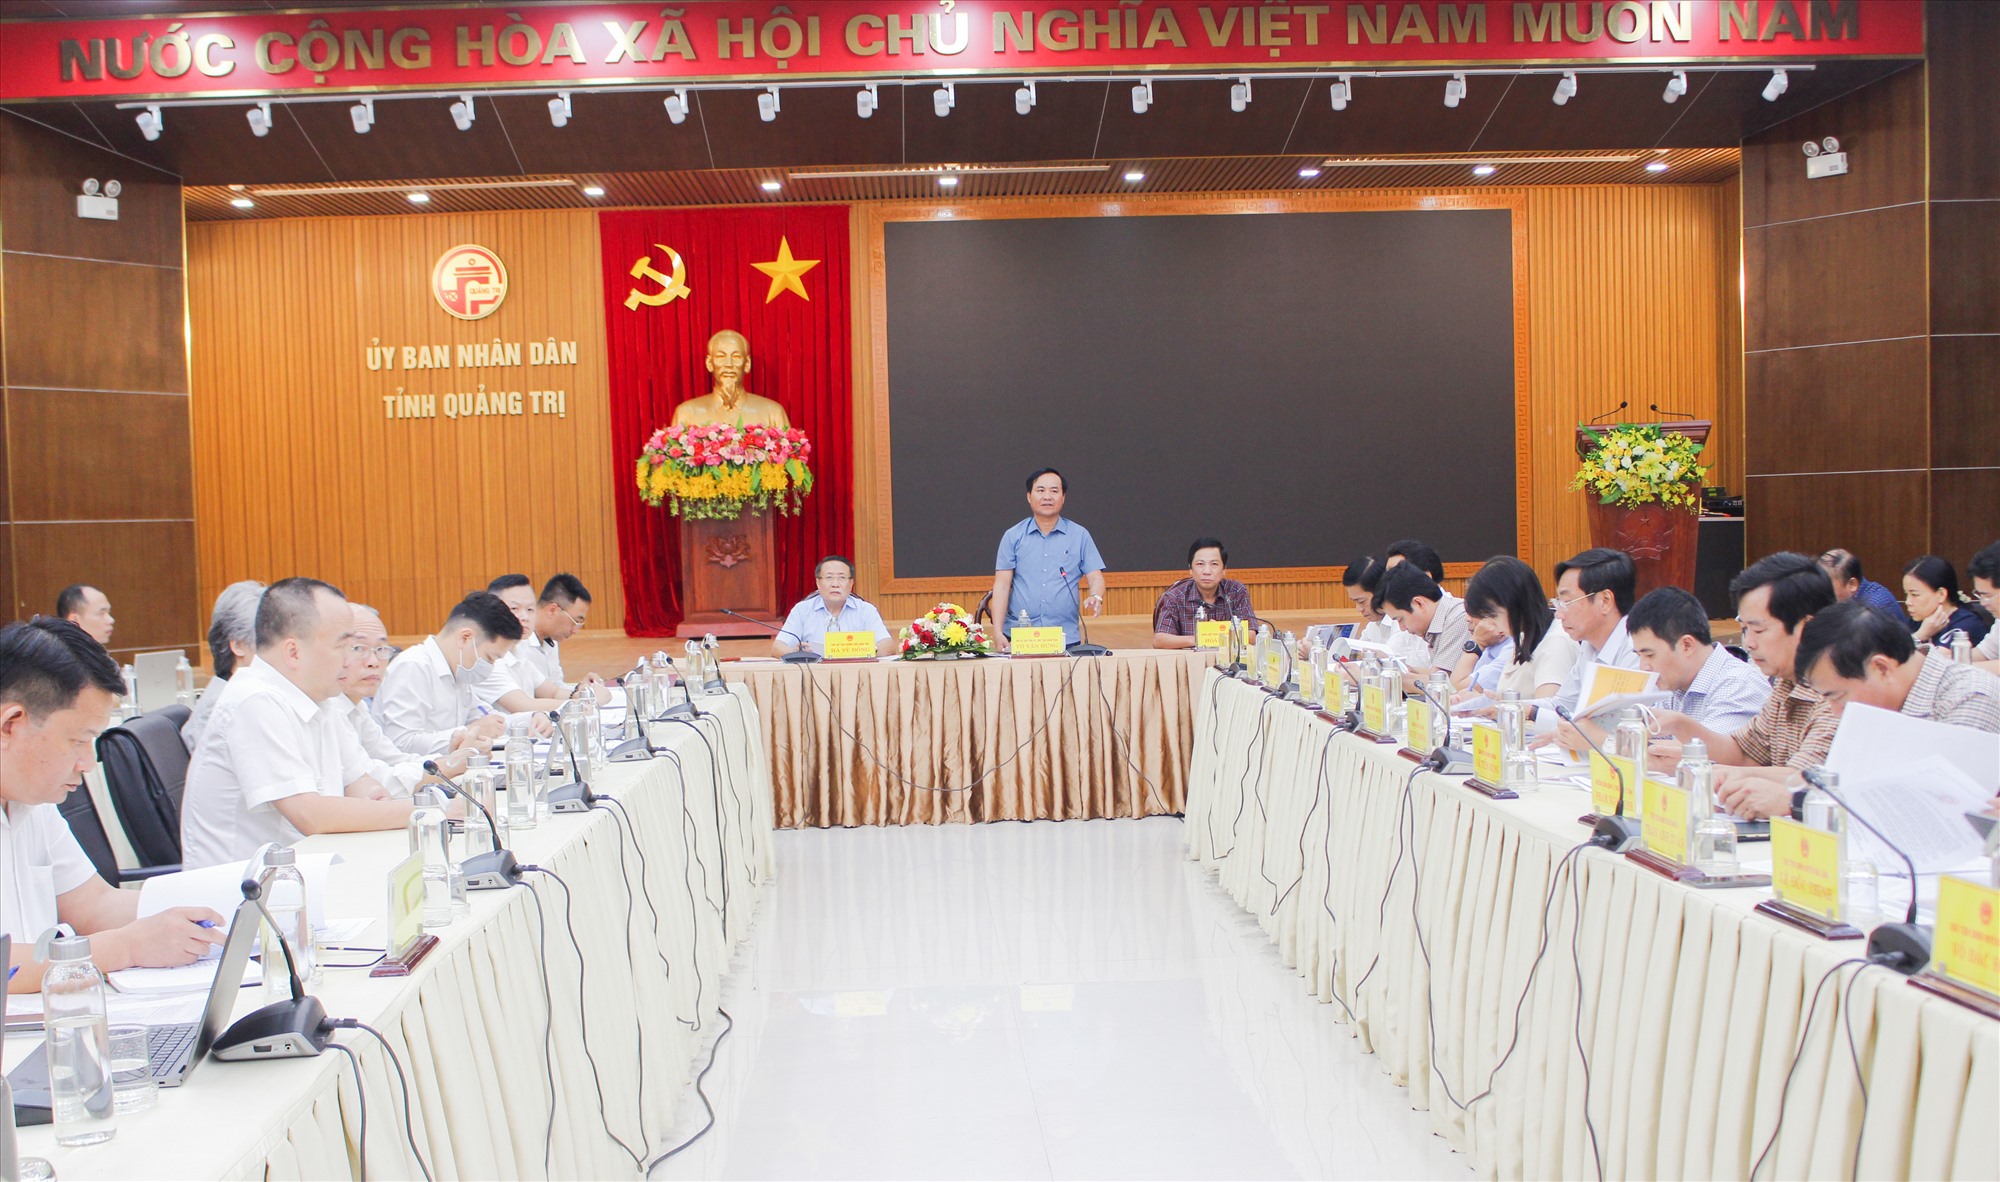 Chủ tịch UBND tỉnh Võ Văn Hưng yêu cầu UBND huyện Cam Lộ đẩy nhanh tiến độ lập quy hoạch đối với Khu đô thị phức hợp, nghỉ dưỡng và sân golf Cam Lộ - Ảnh: T.T